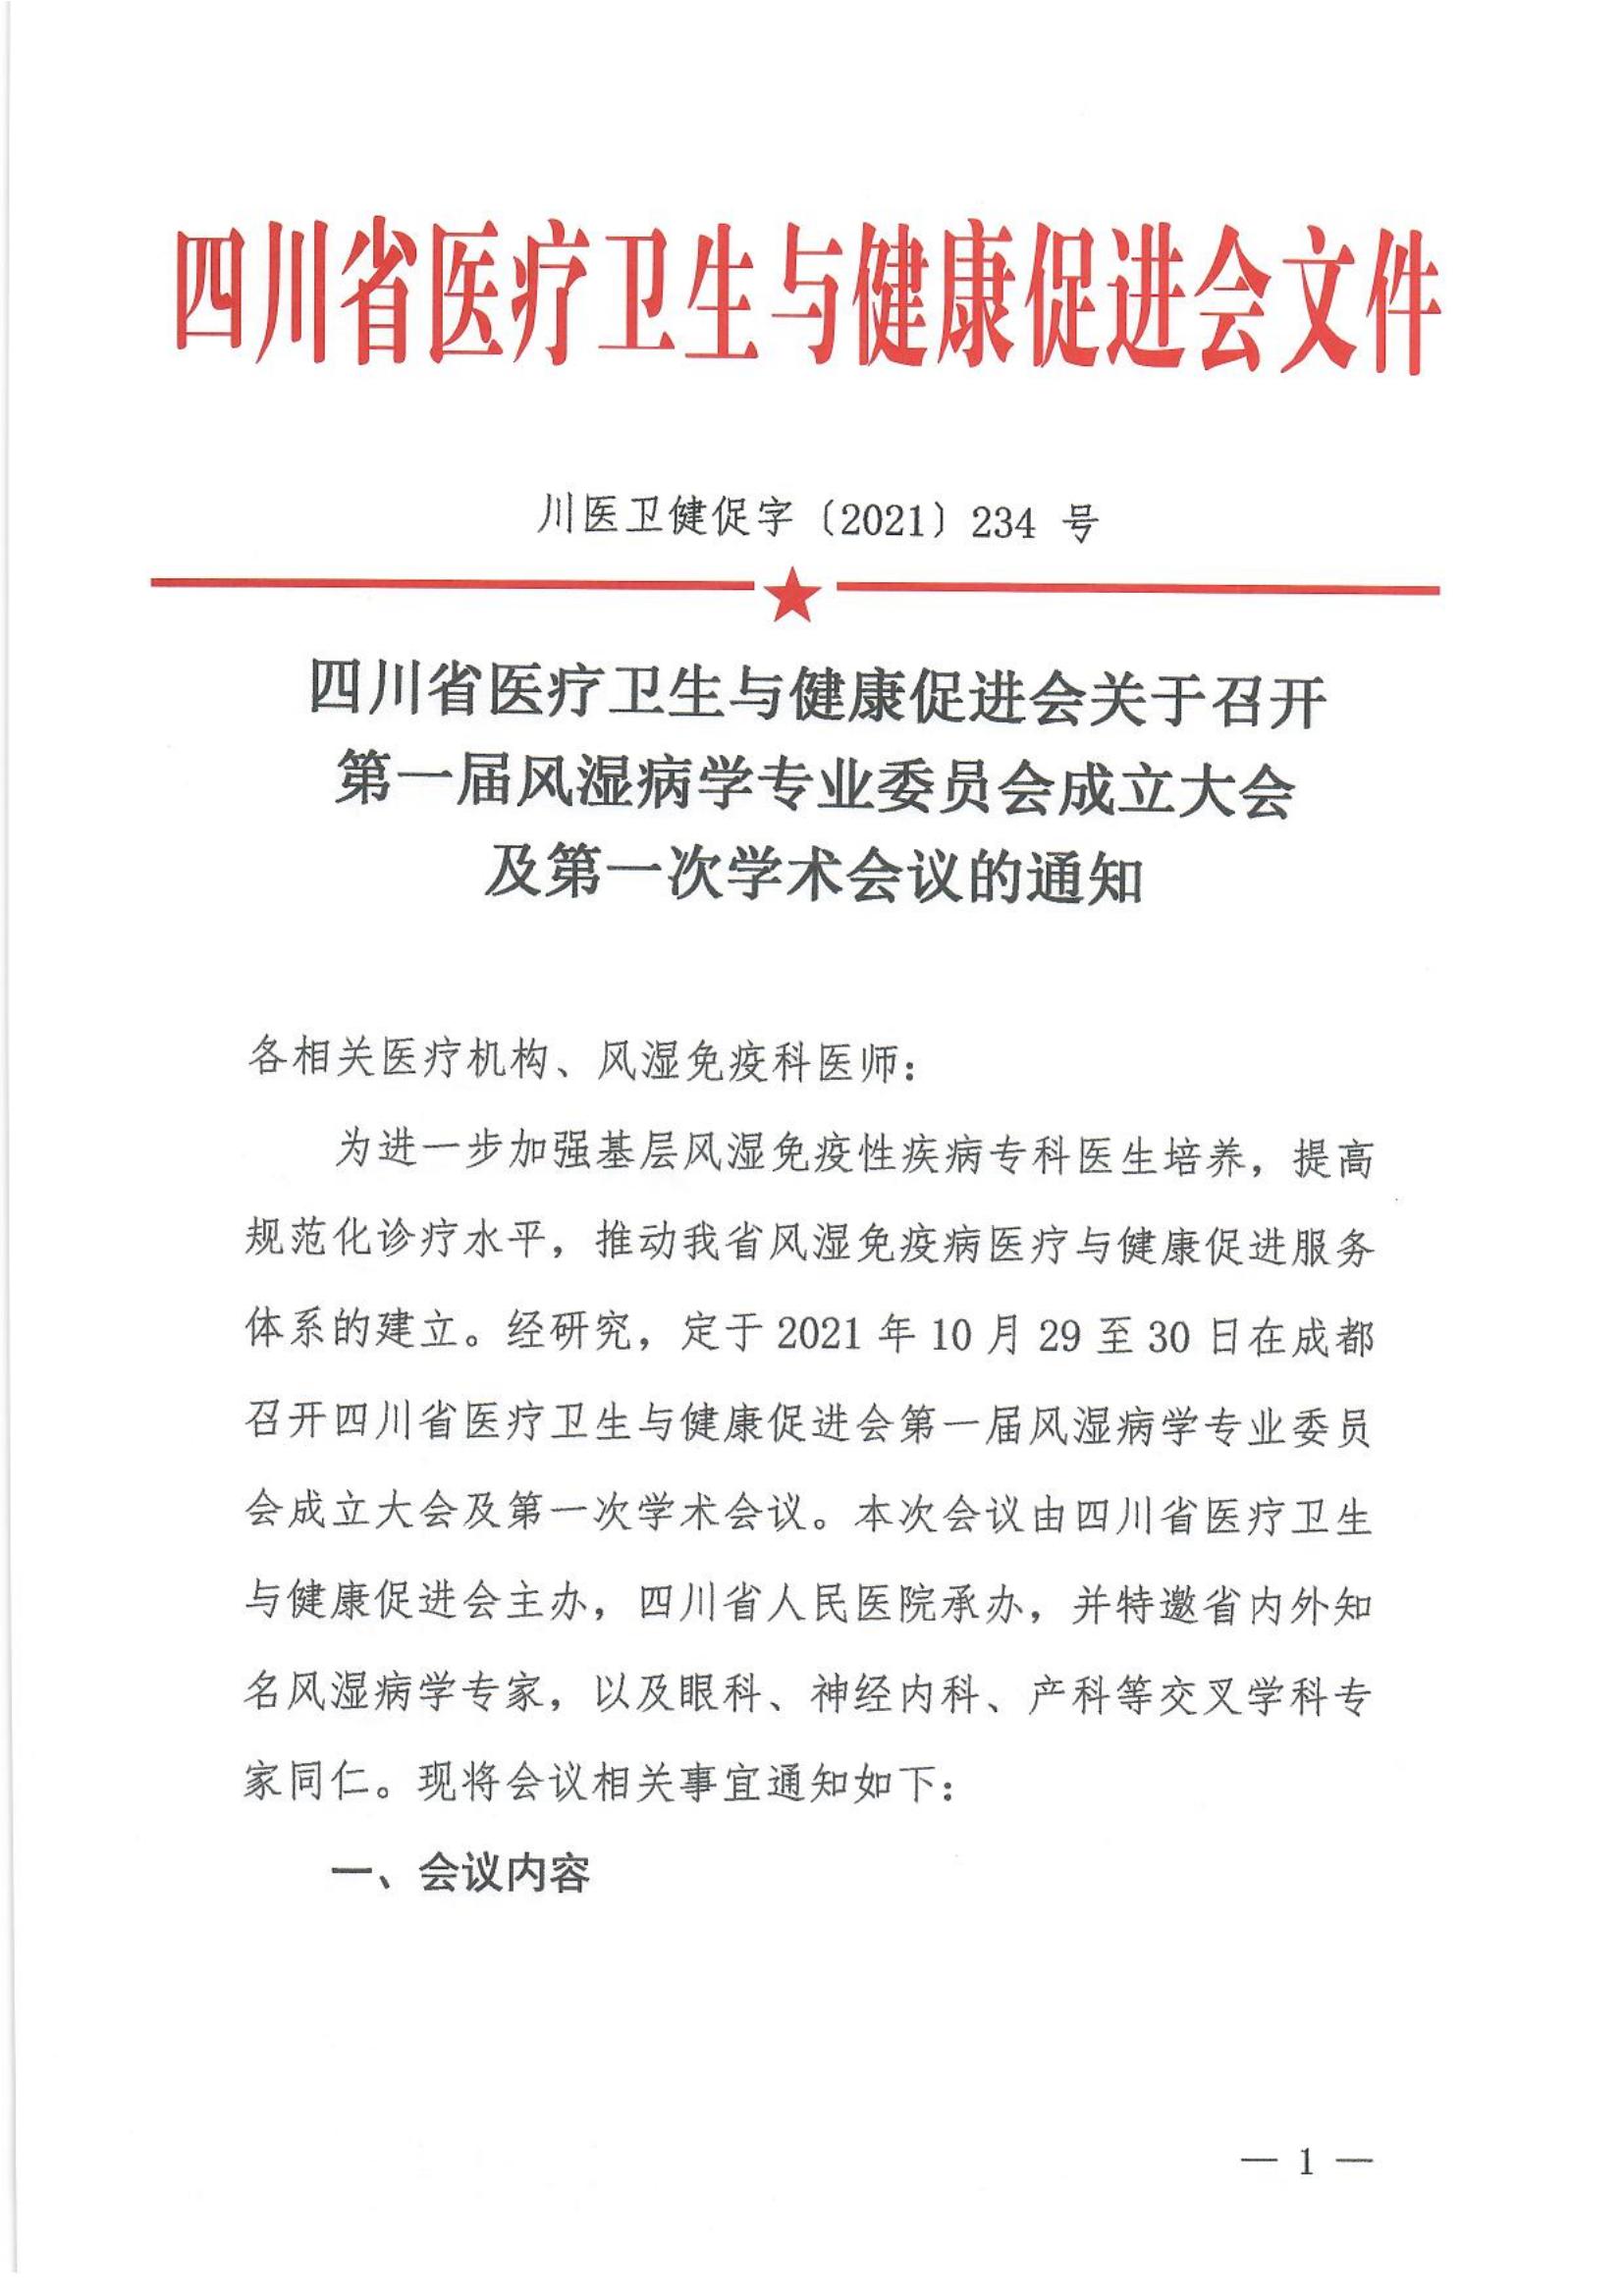 四川省医疗卫生与健康促进会关于召开第一届风湿病学专业委员会成立大会及第一次学术会议的通知_00.jpg